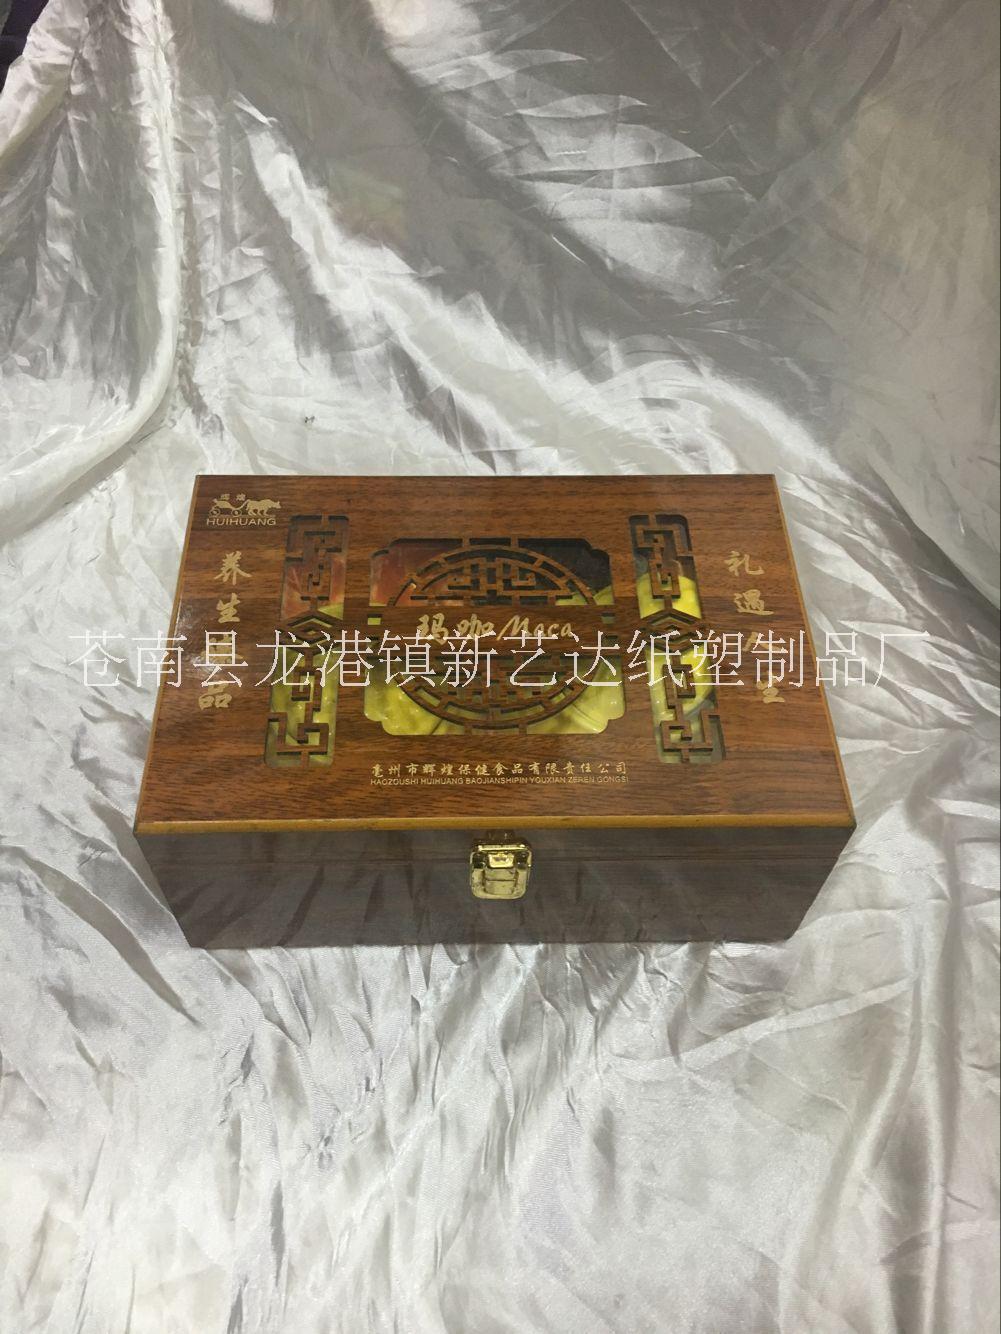 浙江木盒包装厂家  高档包装盒  木盒工厂  浙江木盒包装厂家 高档包装盒